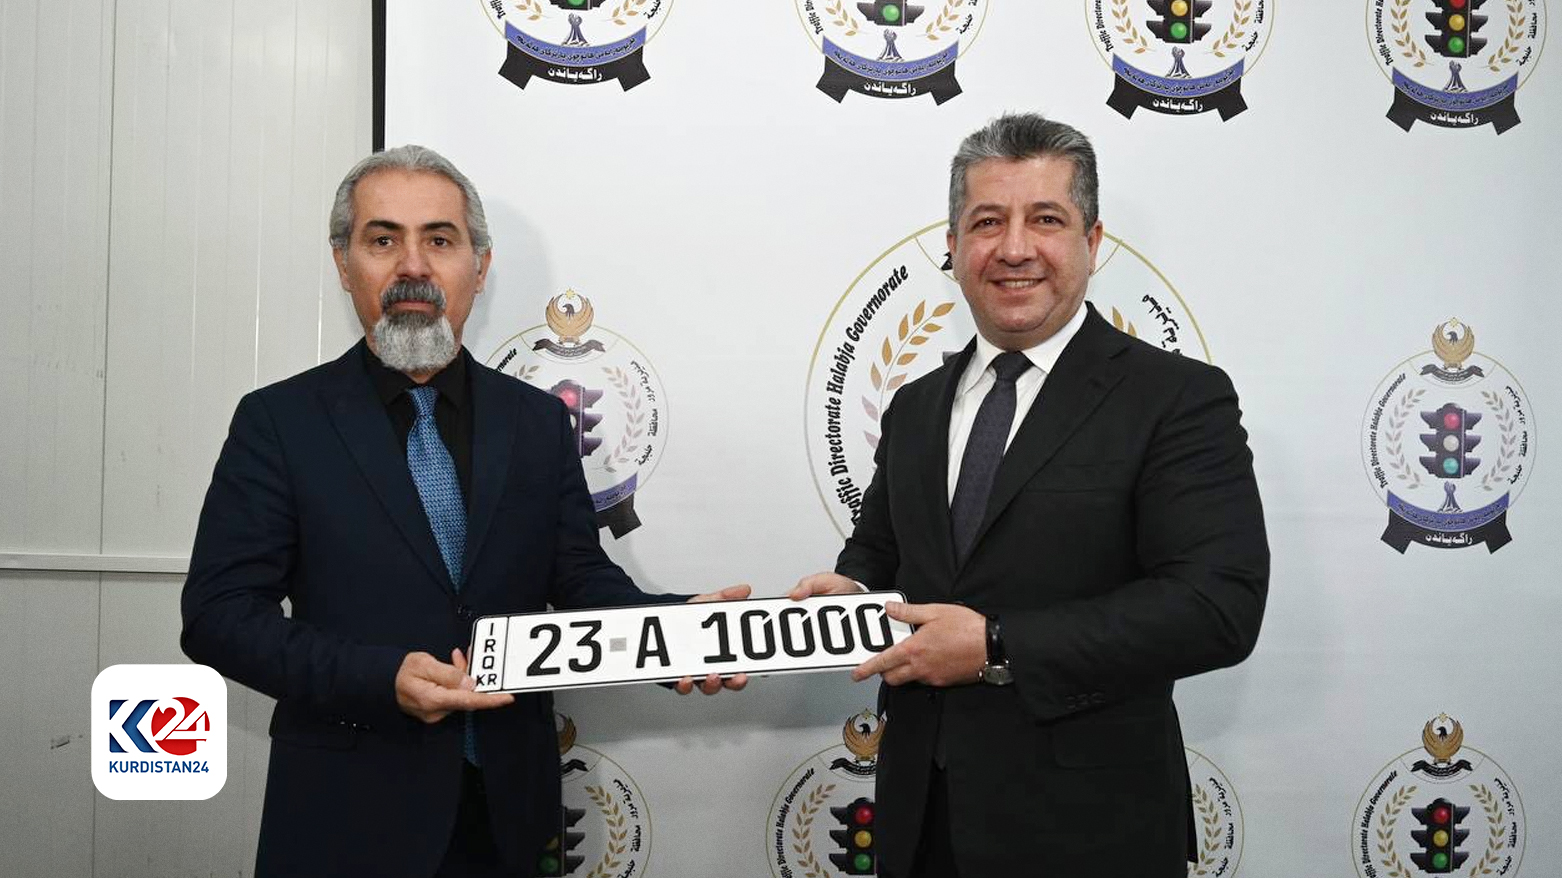 اهدای اولین پلاک خودروی کوردستان - حلبچه توسط نخست وزیر اقلیم کوردستان